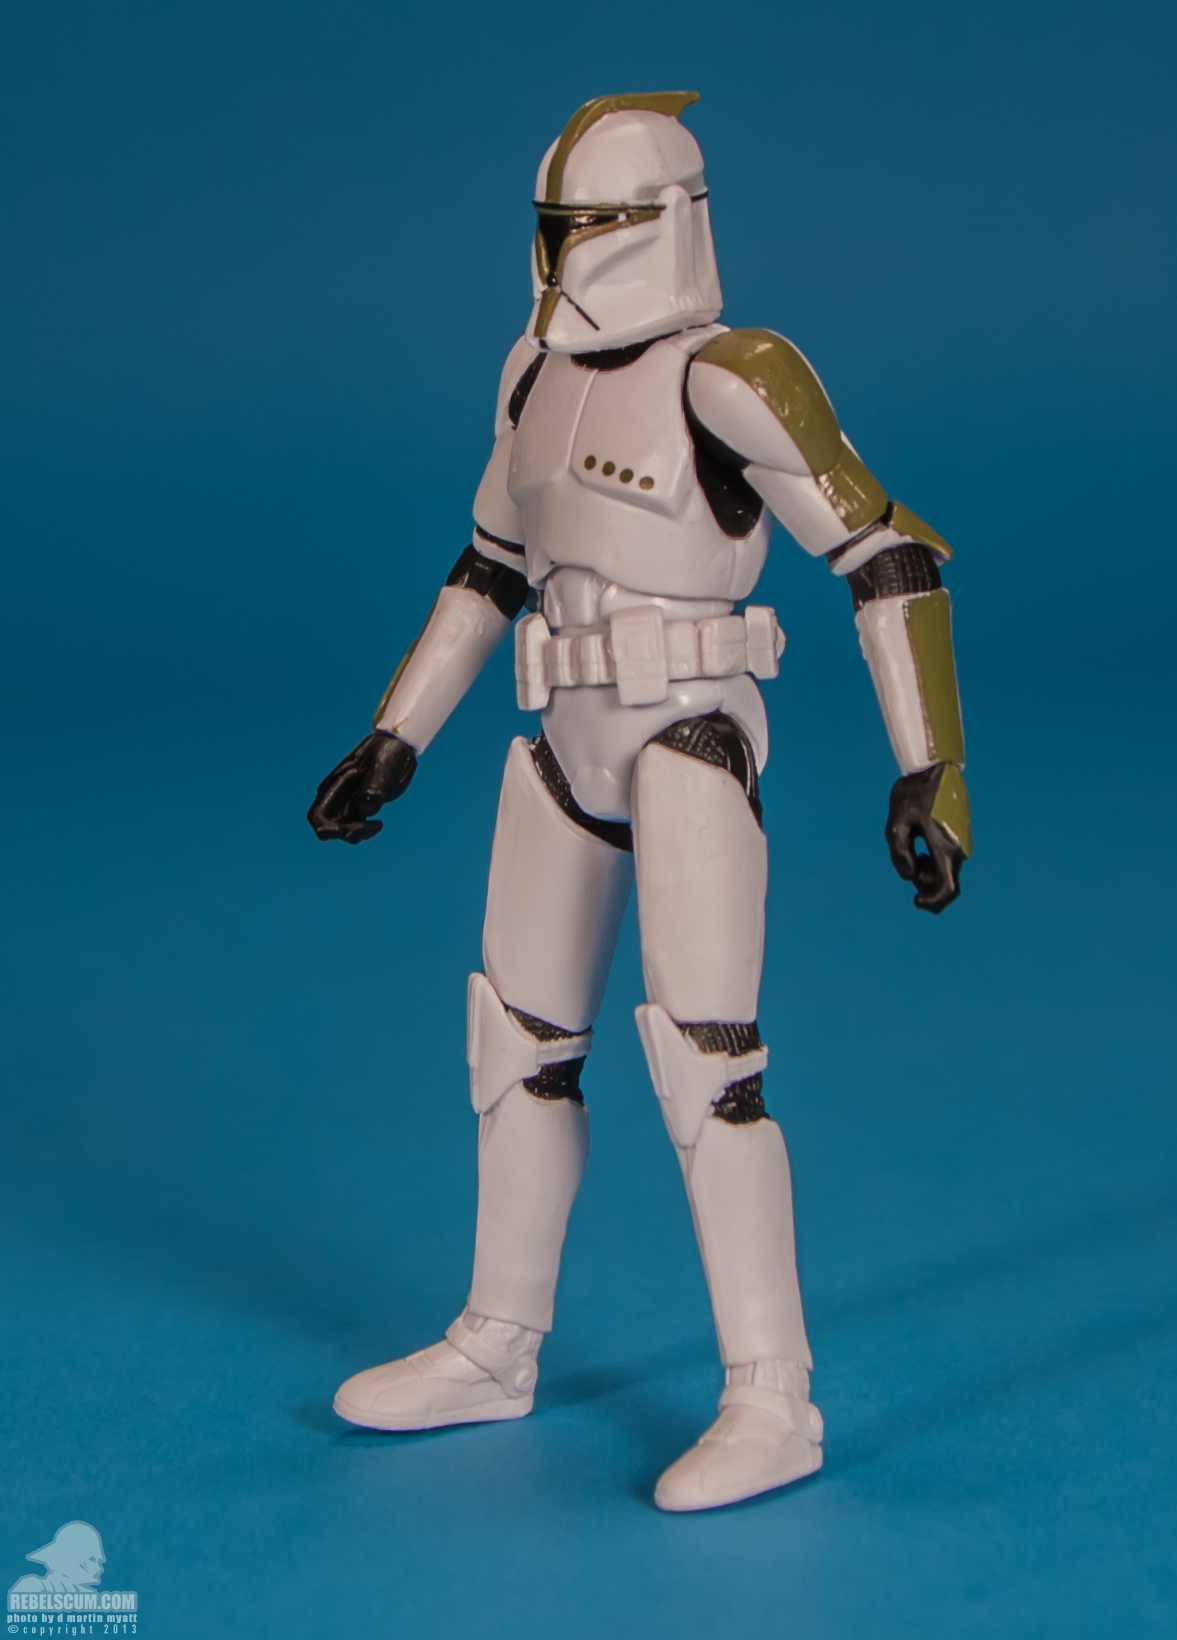 The-Black-Series-Star-Wars-Hasbro-02-Clone-Trooper-Sergeant-003.jpg